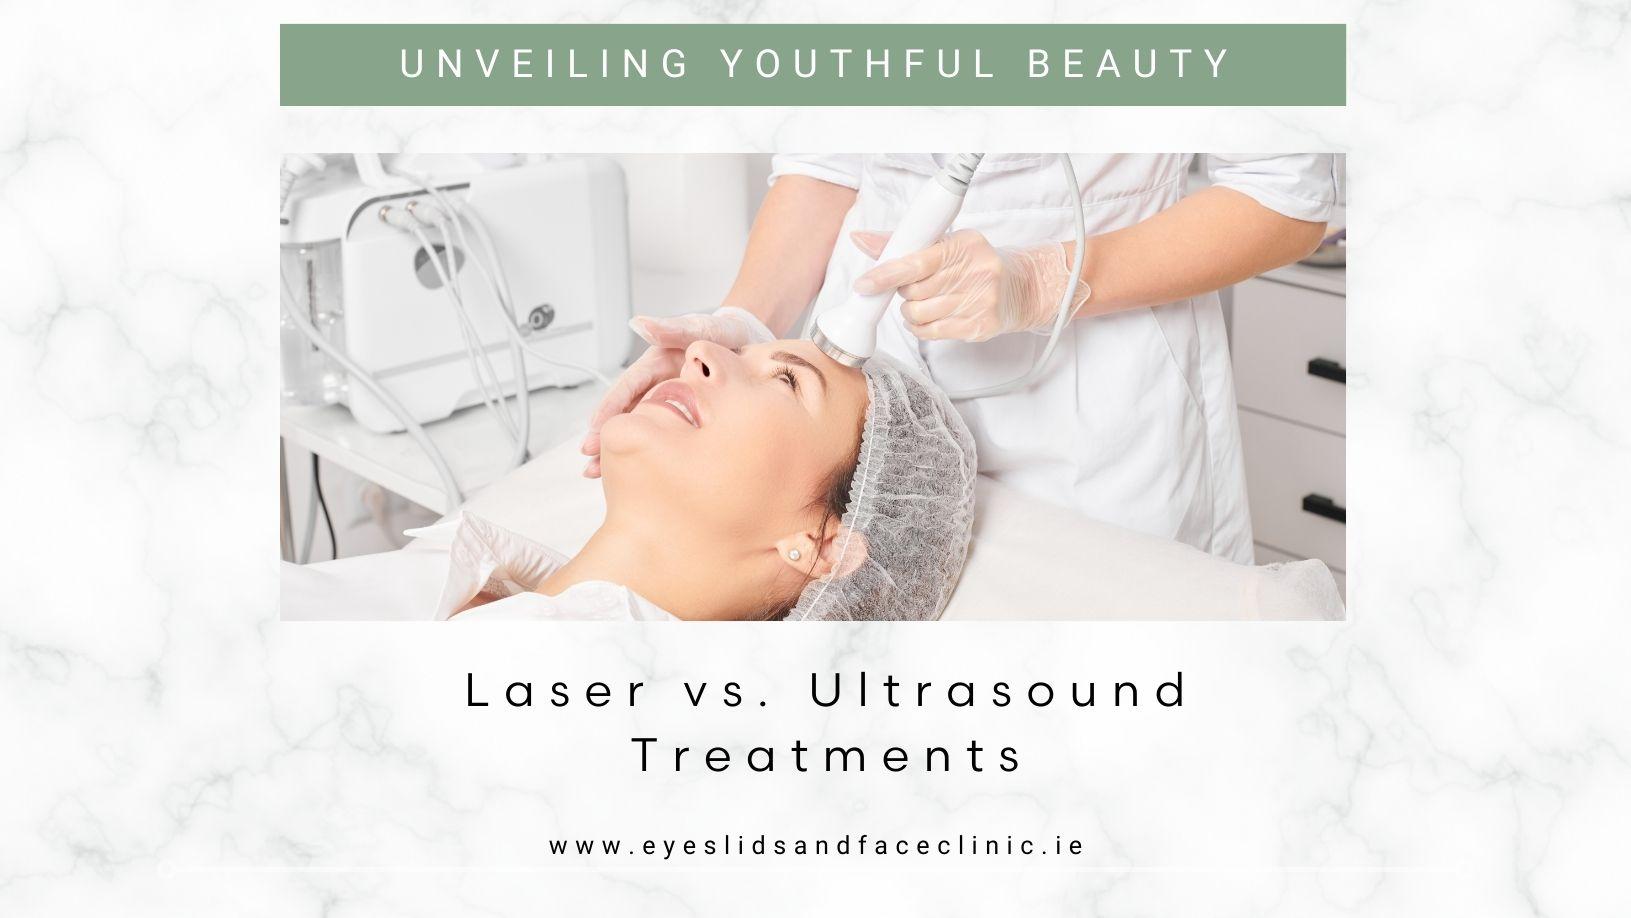 Laser vs. Ultrasound Treatments